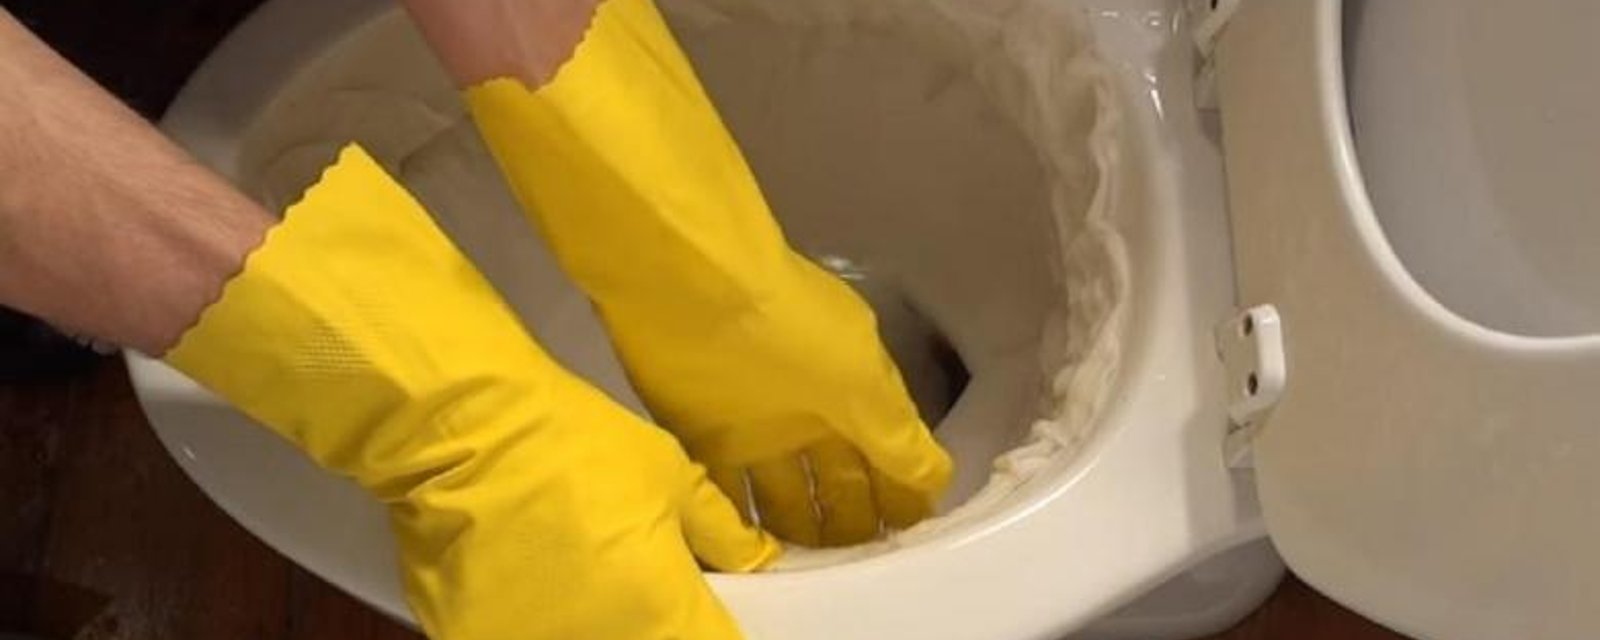 Éliminez les taches d'eau dure dans la toilette en un tour de main! C'EST MAGIQUE! 